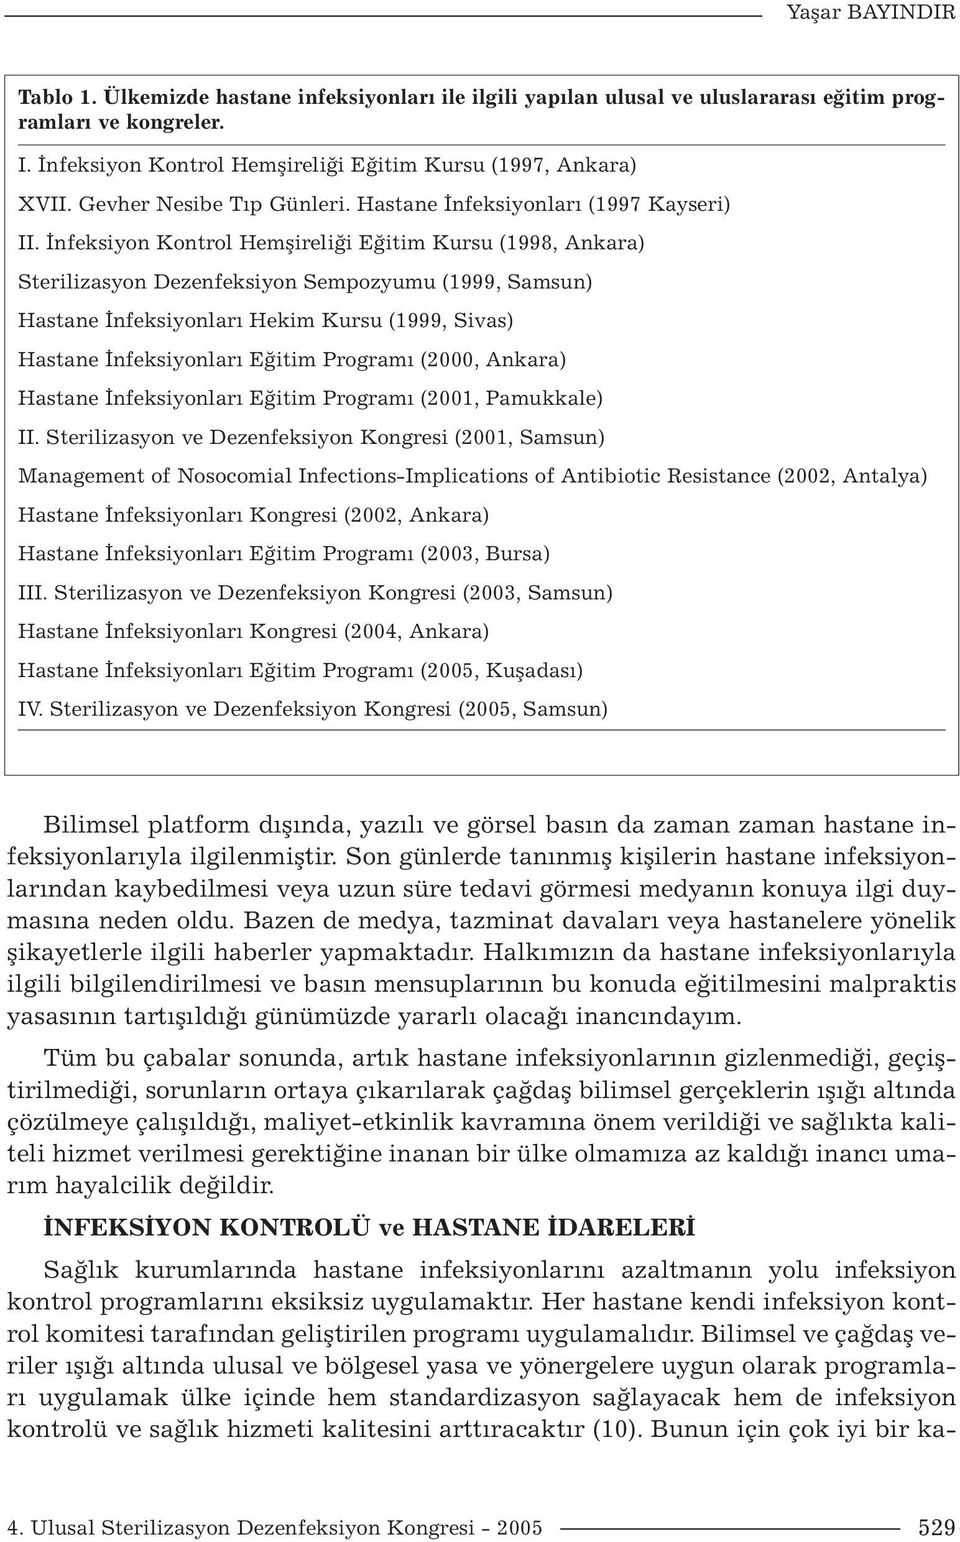 İnfeksiyon Kontrol Hemşireliği Eğitim Kursu (1998, Ankara) Sterilizasyon Dezenfeksiyon Sempozyumu (1999, Samsun) Hastane İnfeksiyonları Hekim Kursu (1999, Sivas) Hastane İnfeksiyonları Eğitim